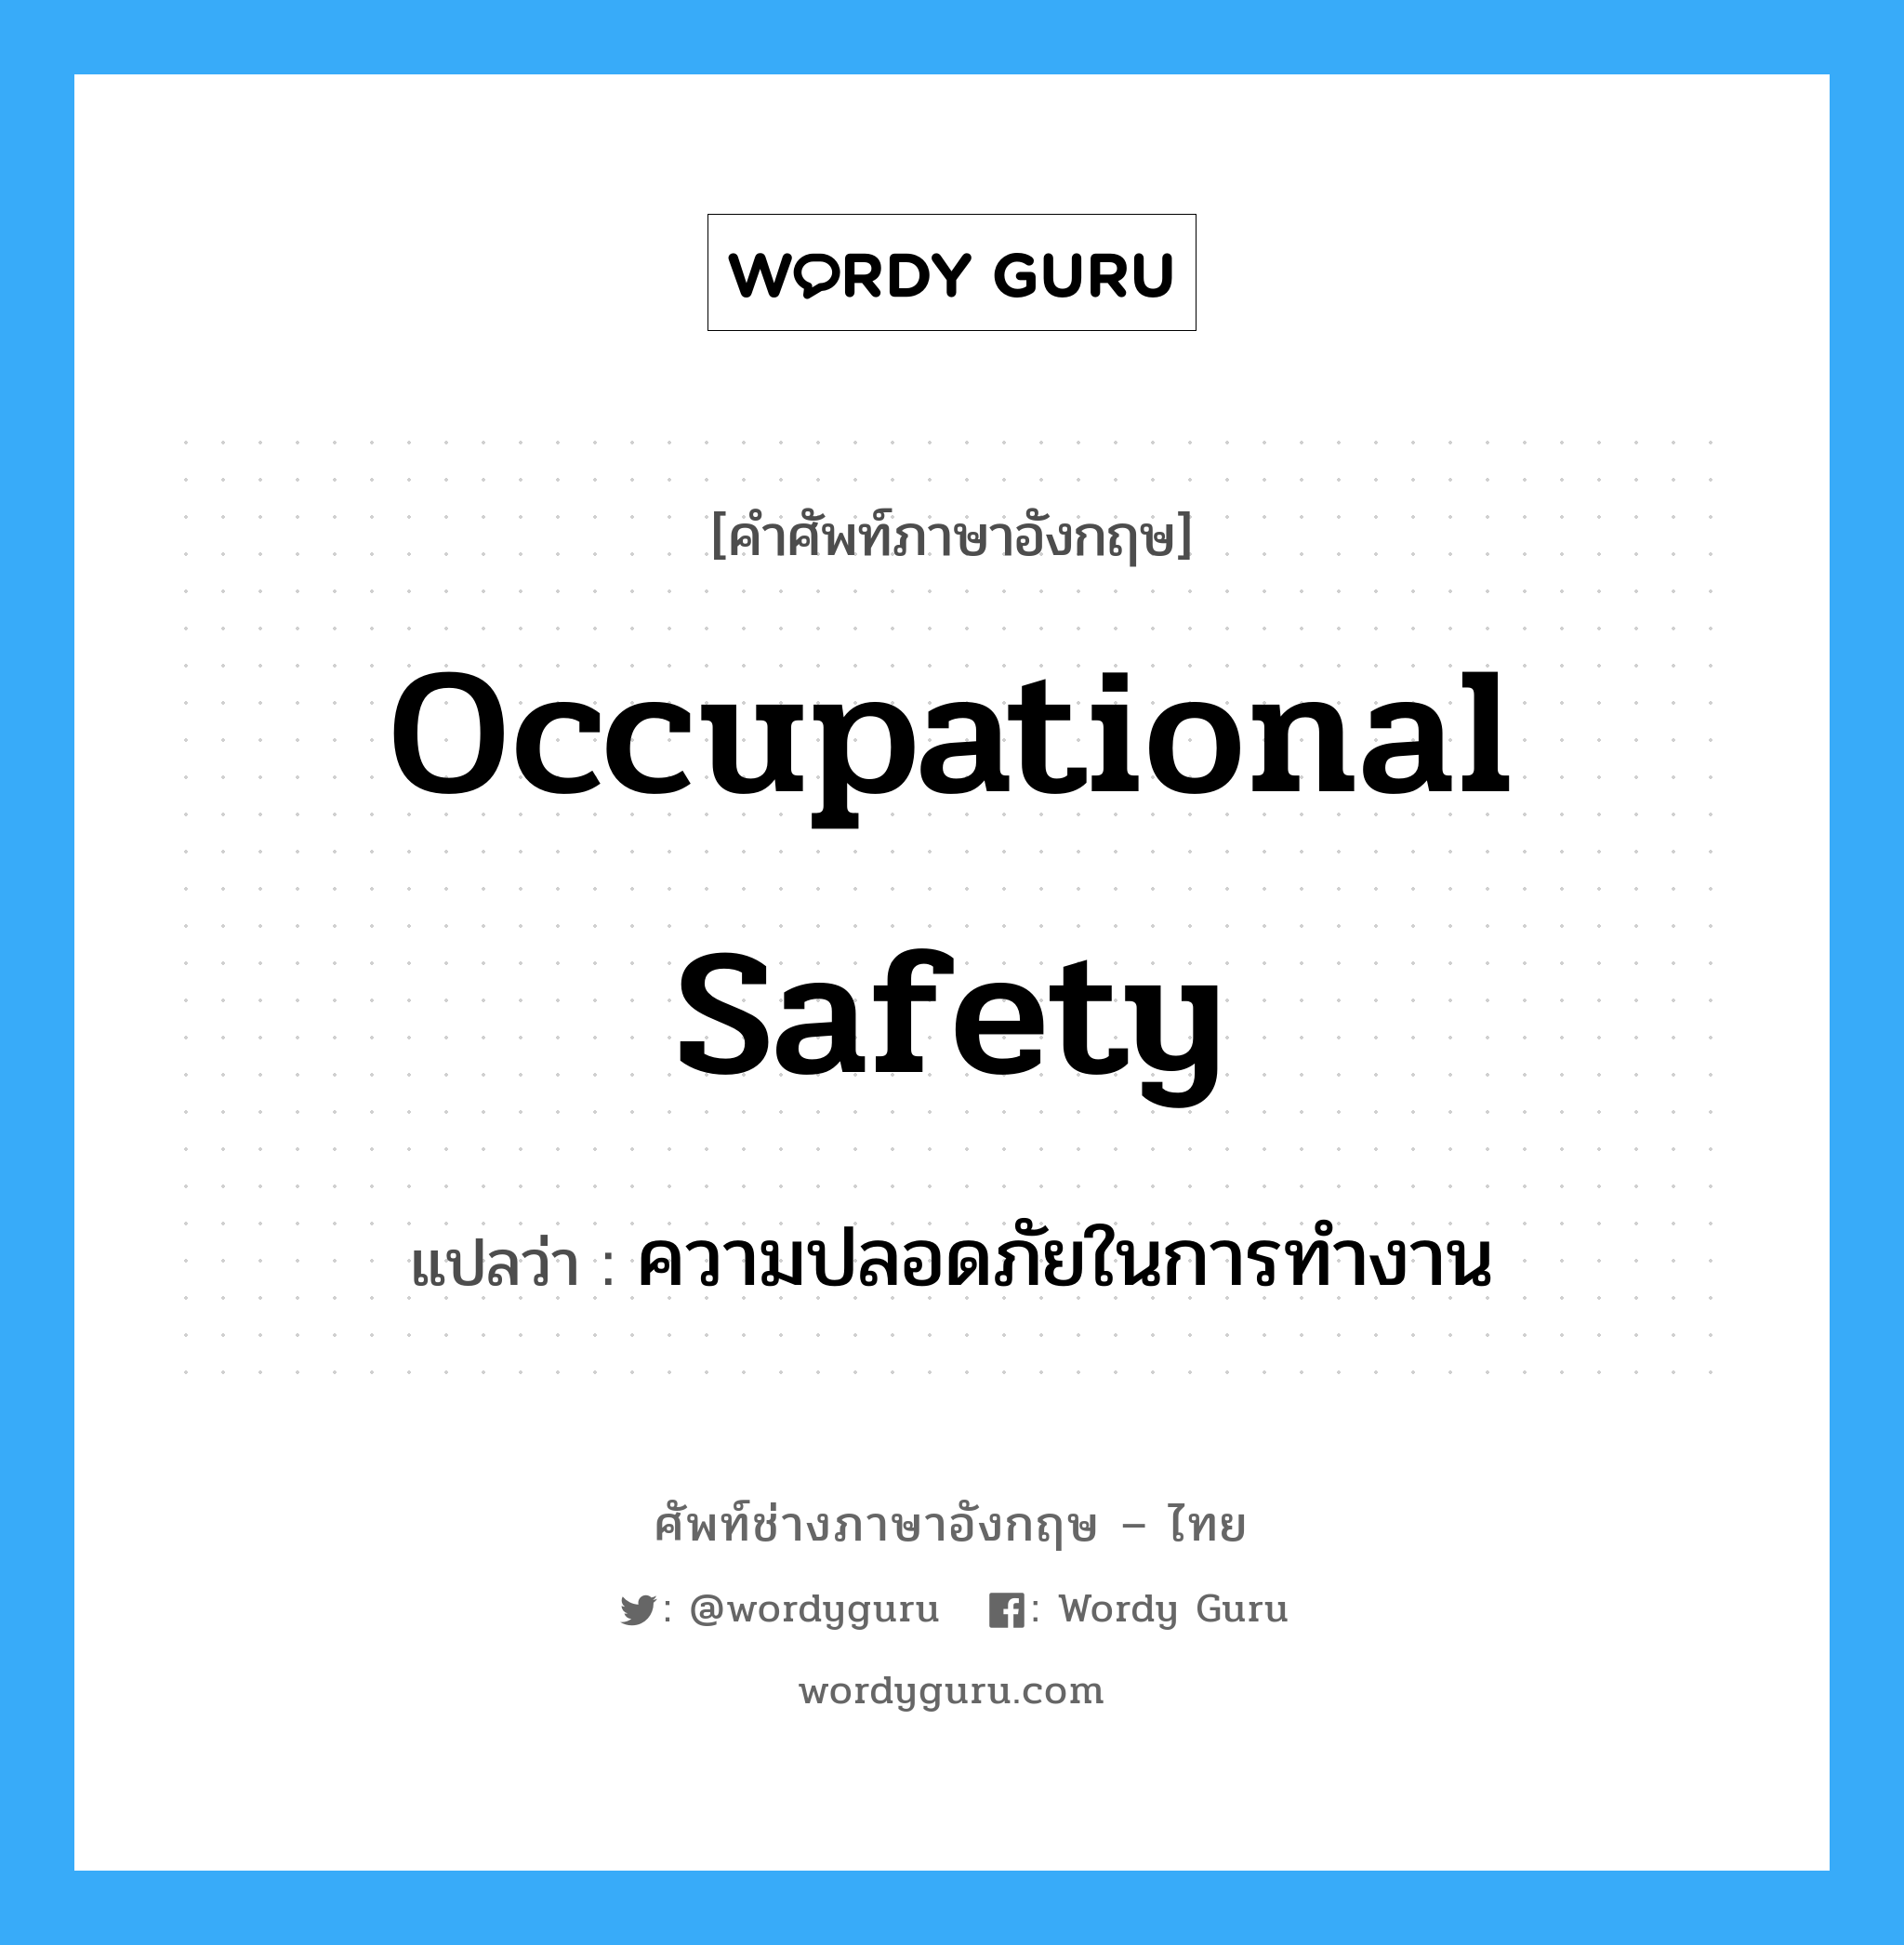 ความปลอดภัยในการทำงาน ภาษาอังกฤษ?, คำศัพท์ช่างภาษาอังกฤษ - ไทย ความปลอดภัยในการทำงาน คำศัพท์ภาษาอังกฤษ ความปลอดภัยในการทำงาน แปลว่า Occupational Safety